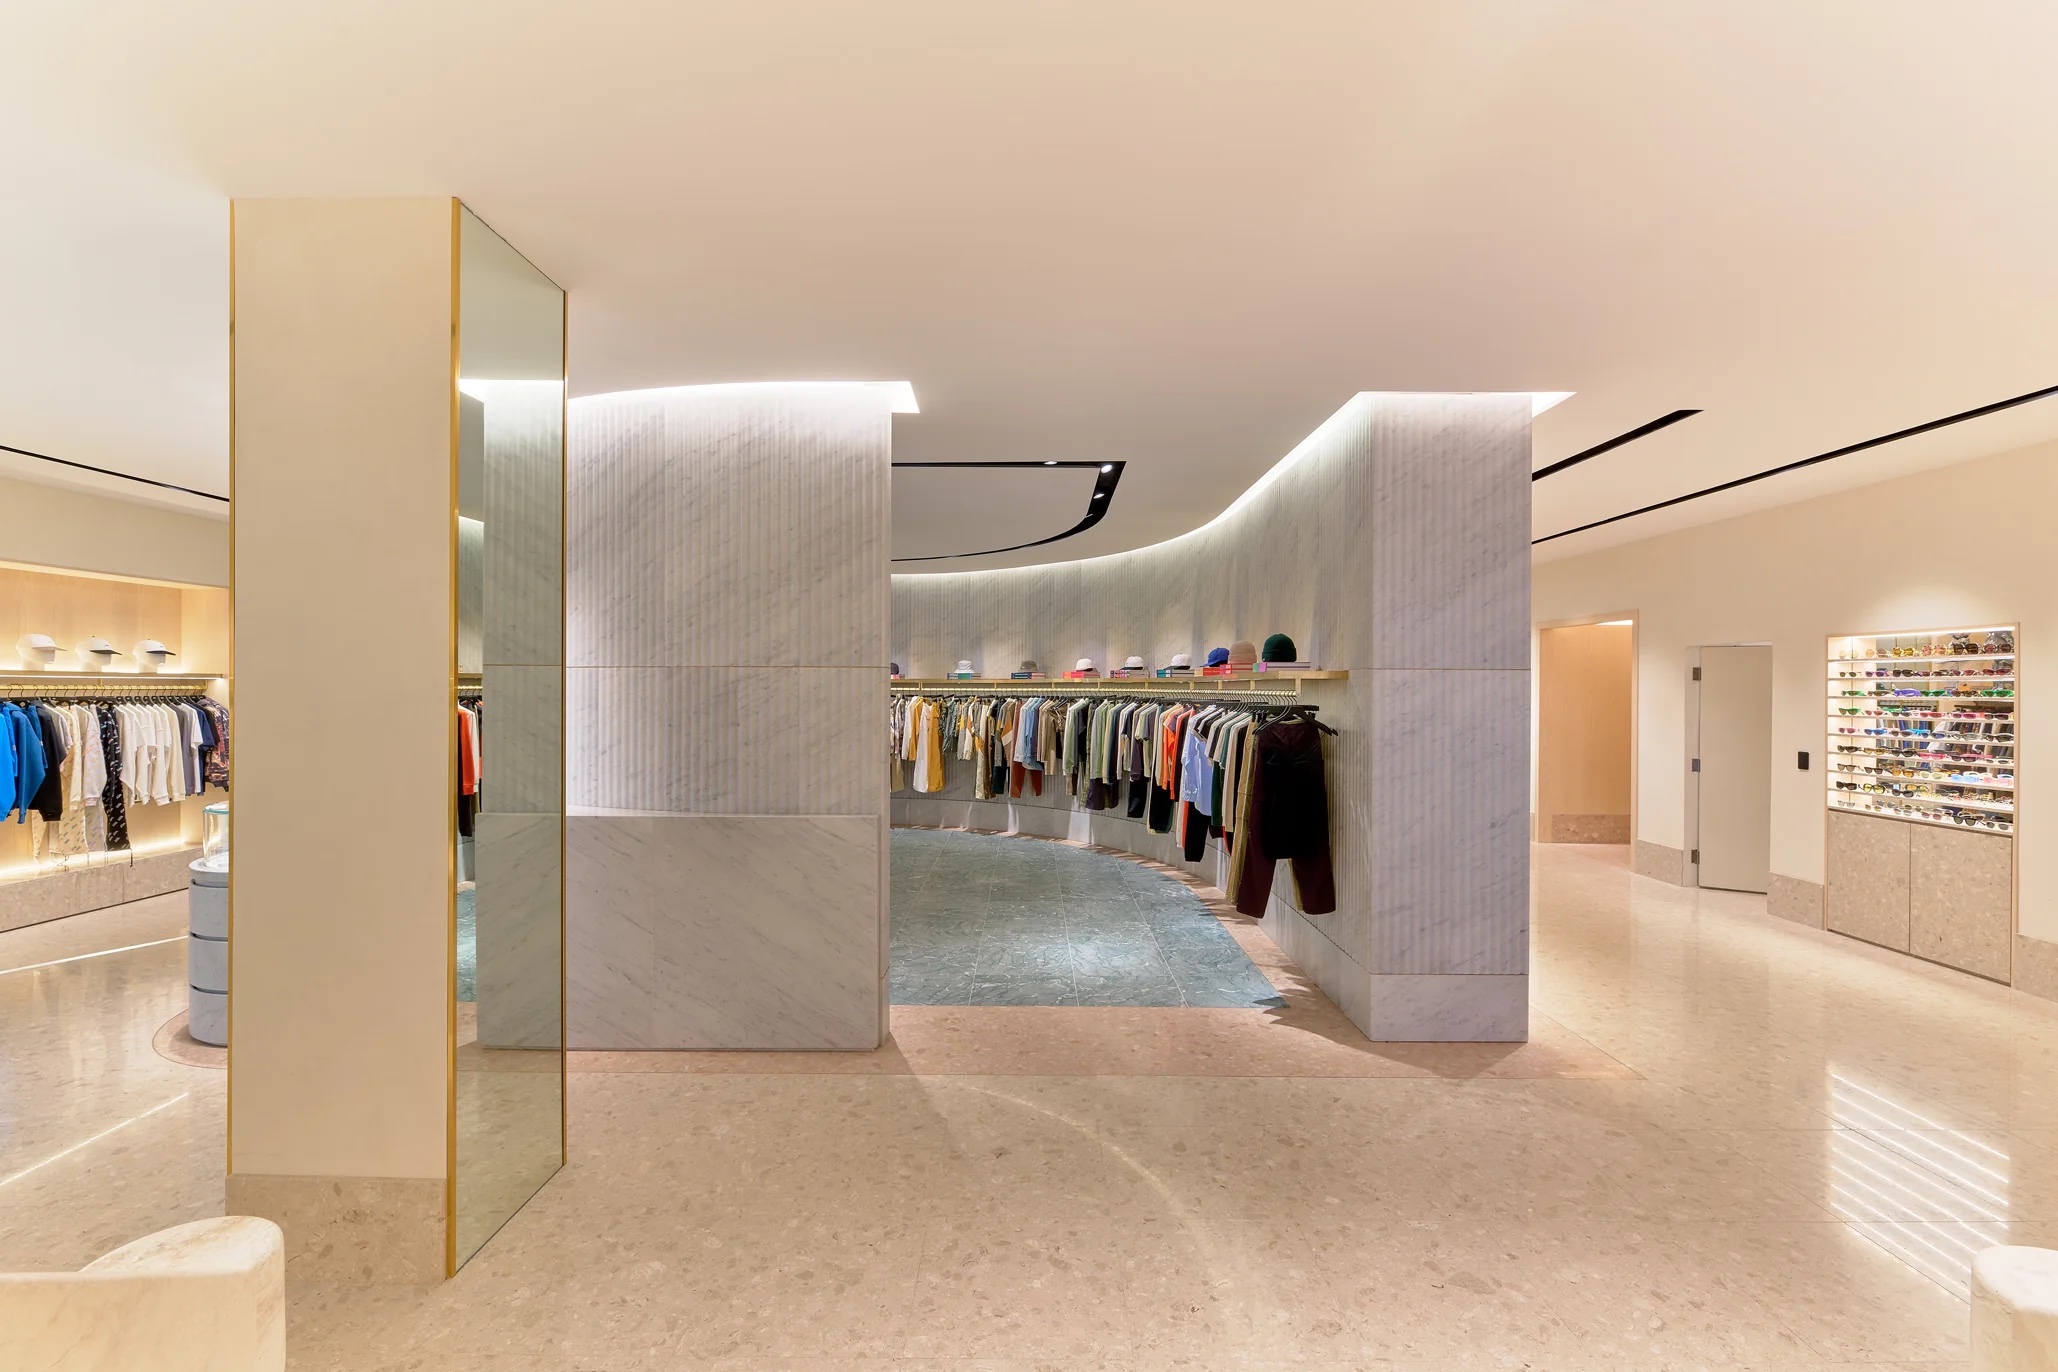 Explore Gucci's Store Vision At The Miami Design District